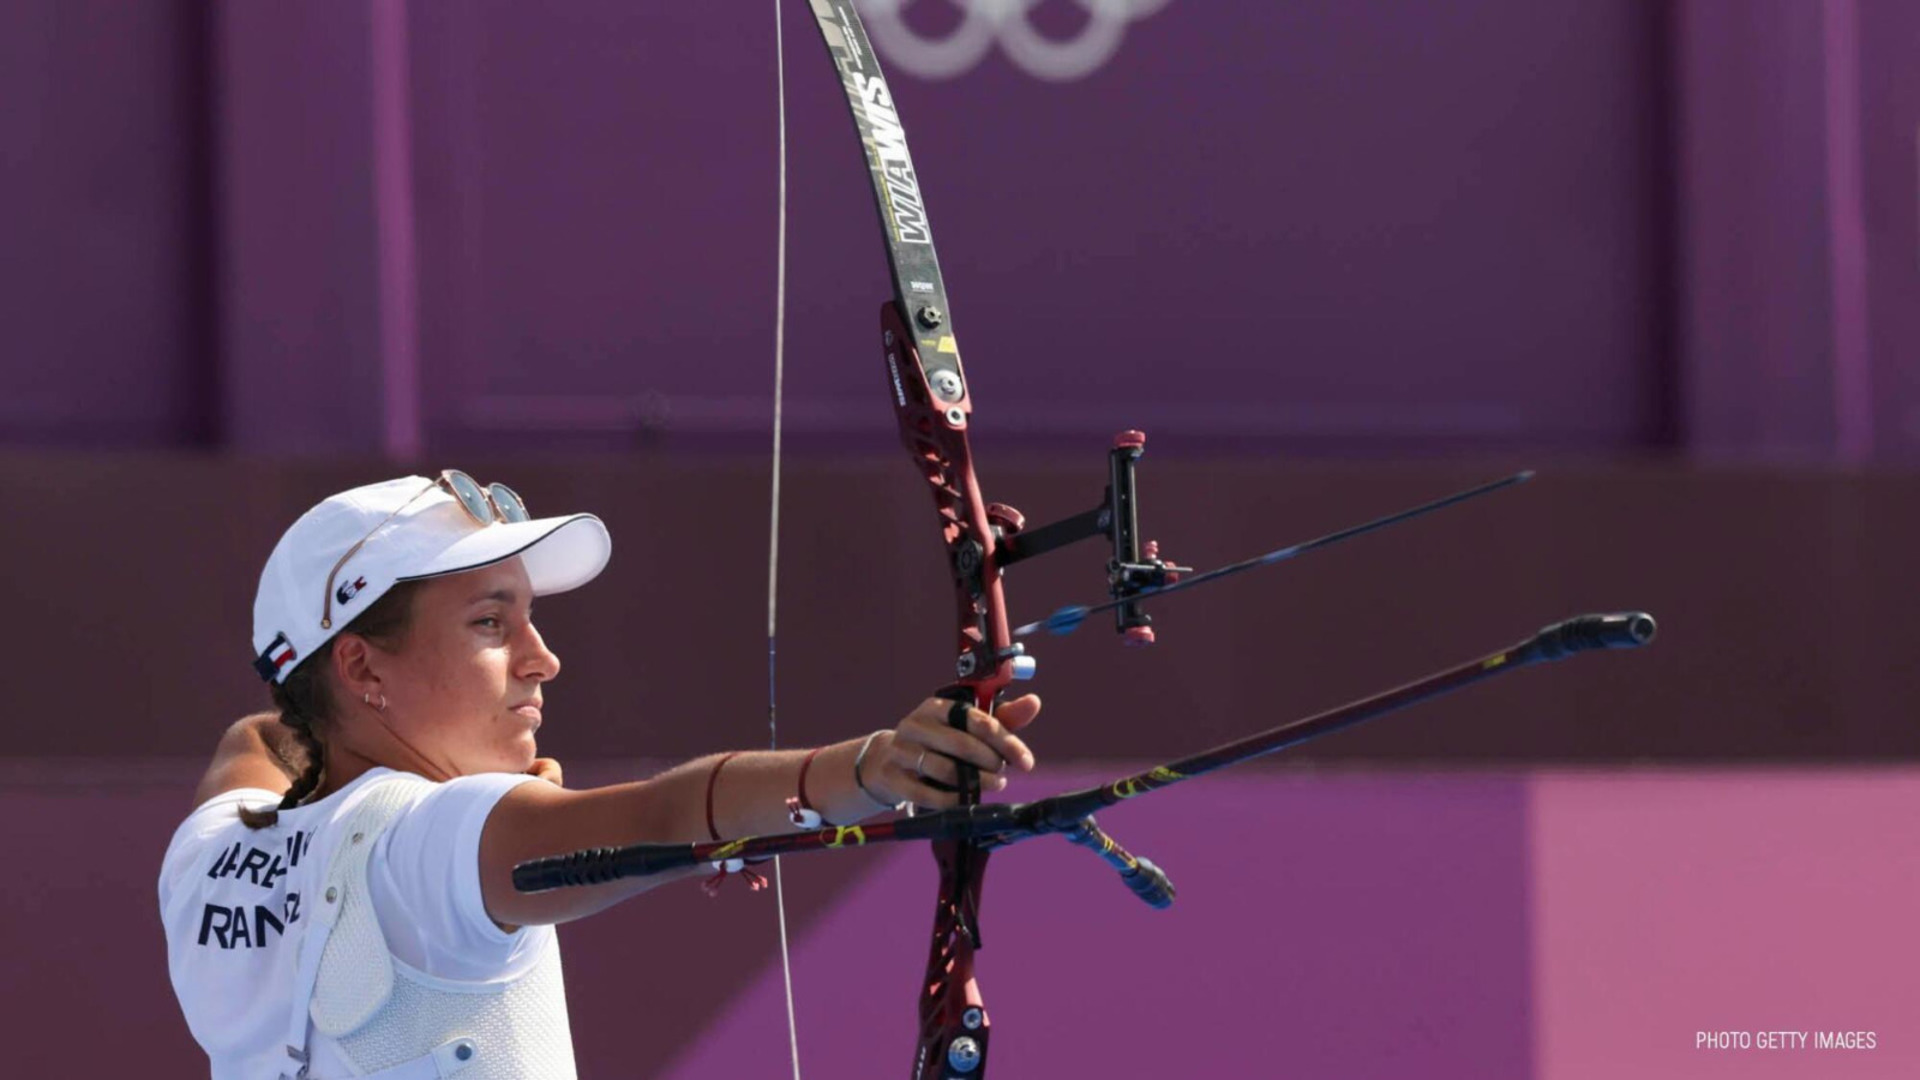 Le parcours de Lisa Barbelin aux Jeux Olympiques s'arrête en huitièmes de finale